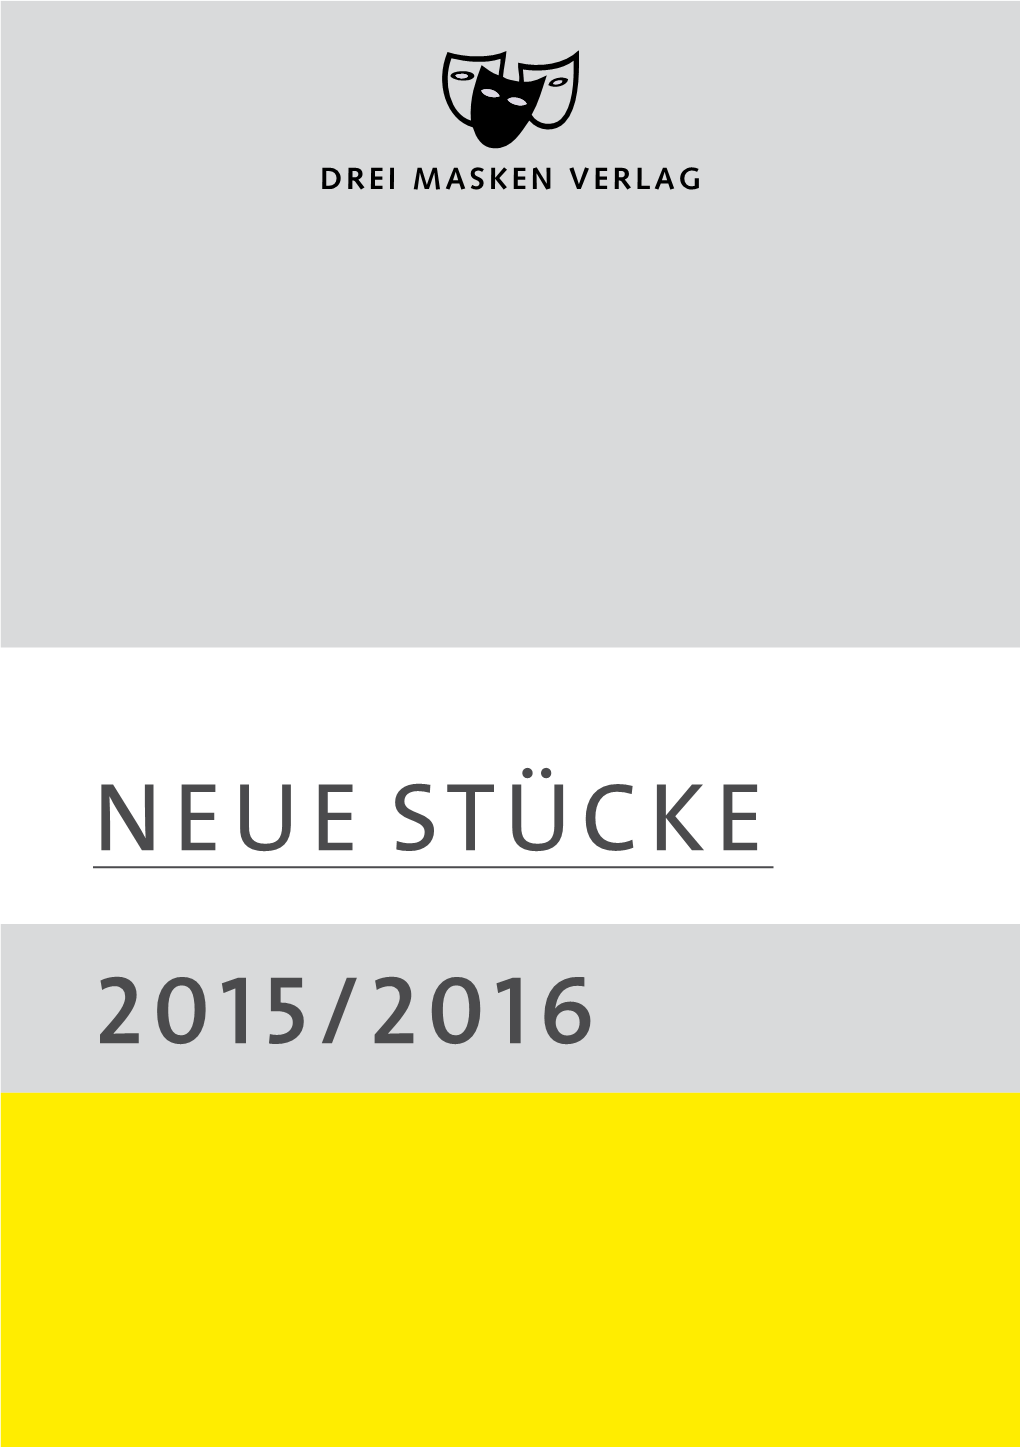 NEUE STÜCKE 2015/2016 GEGEN DIE WAND / Nach Dem Drehbuch Von Fatih Akin / Garage X Wien NEUE STÜCKE 2015/16